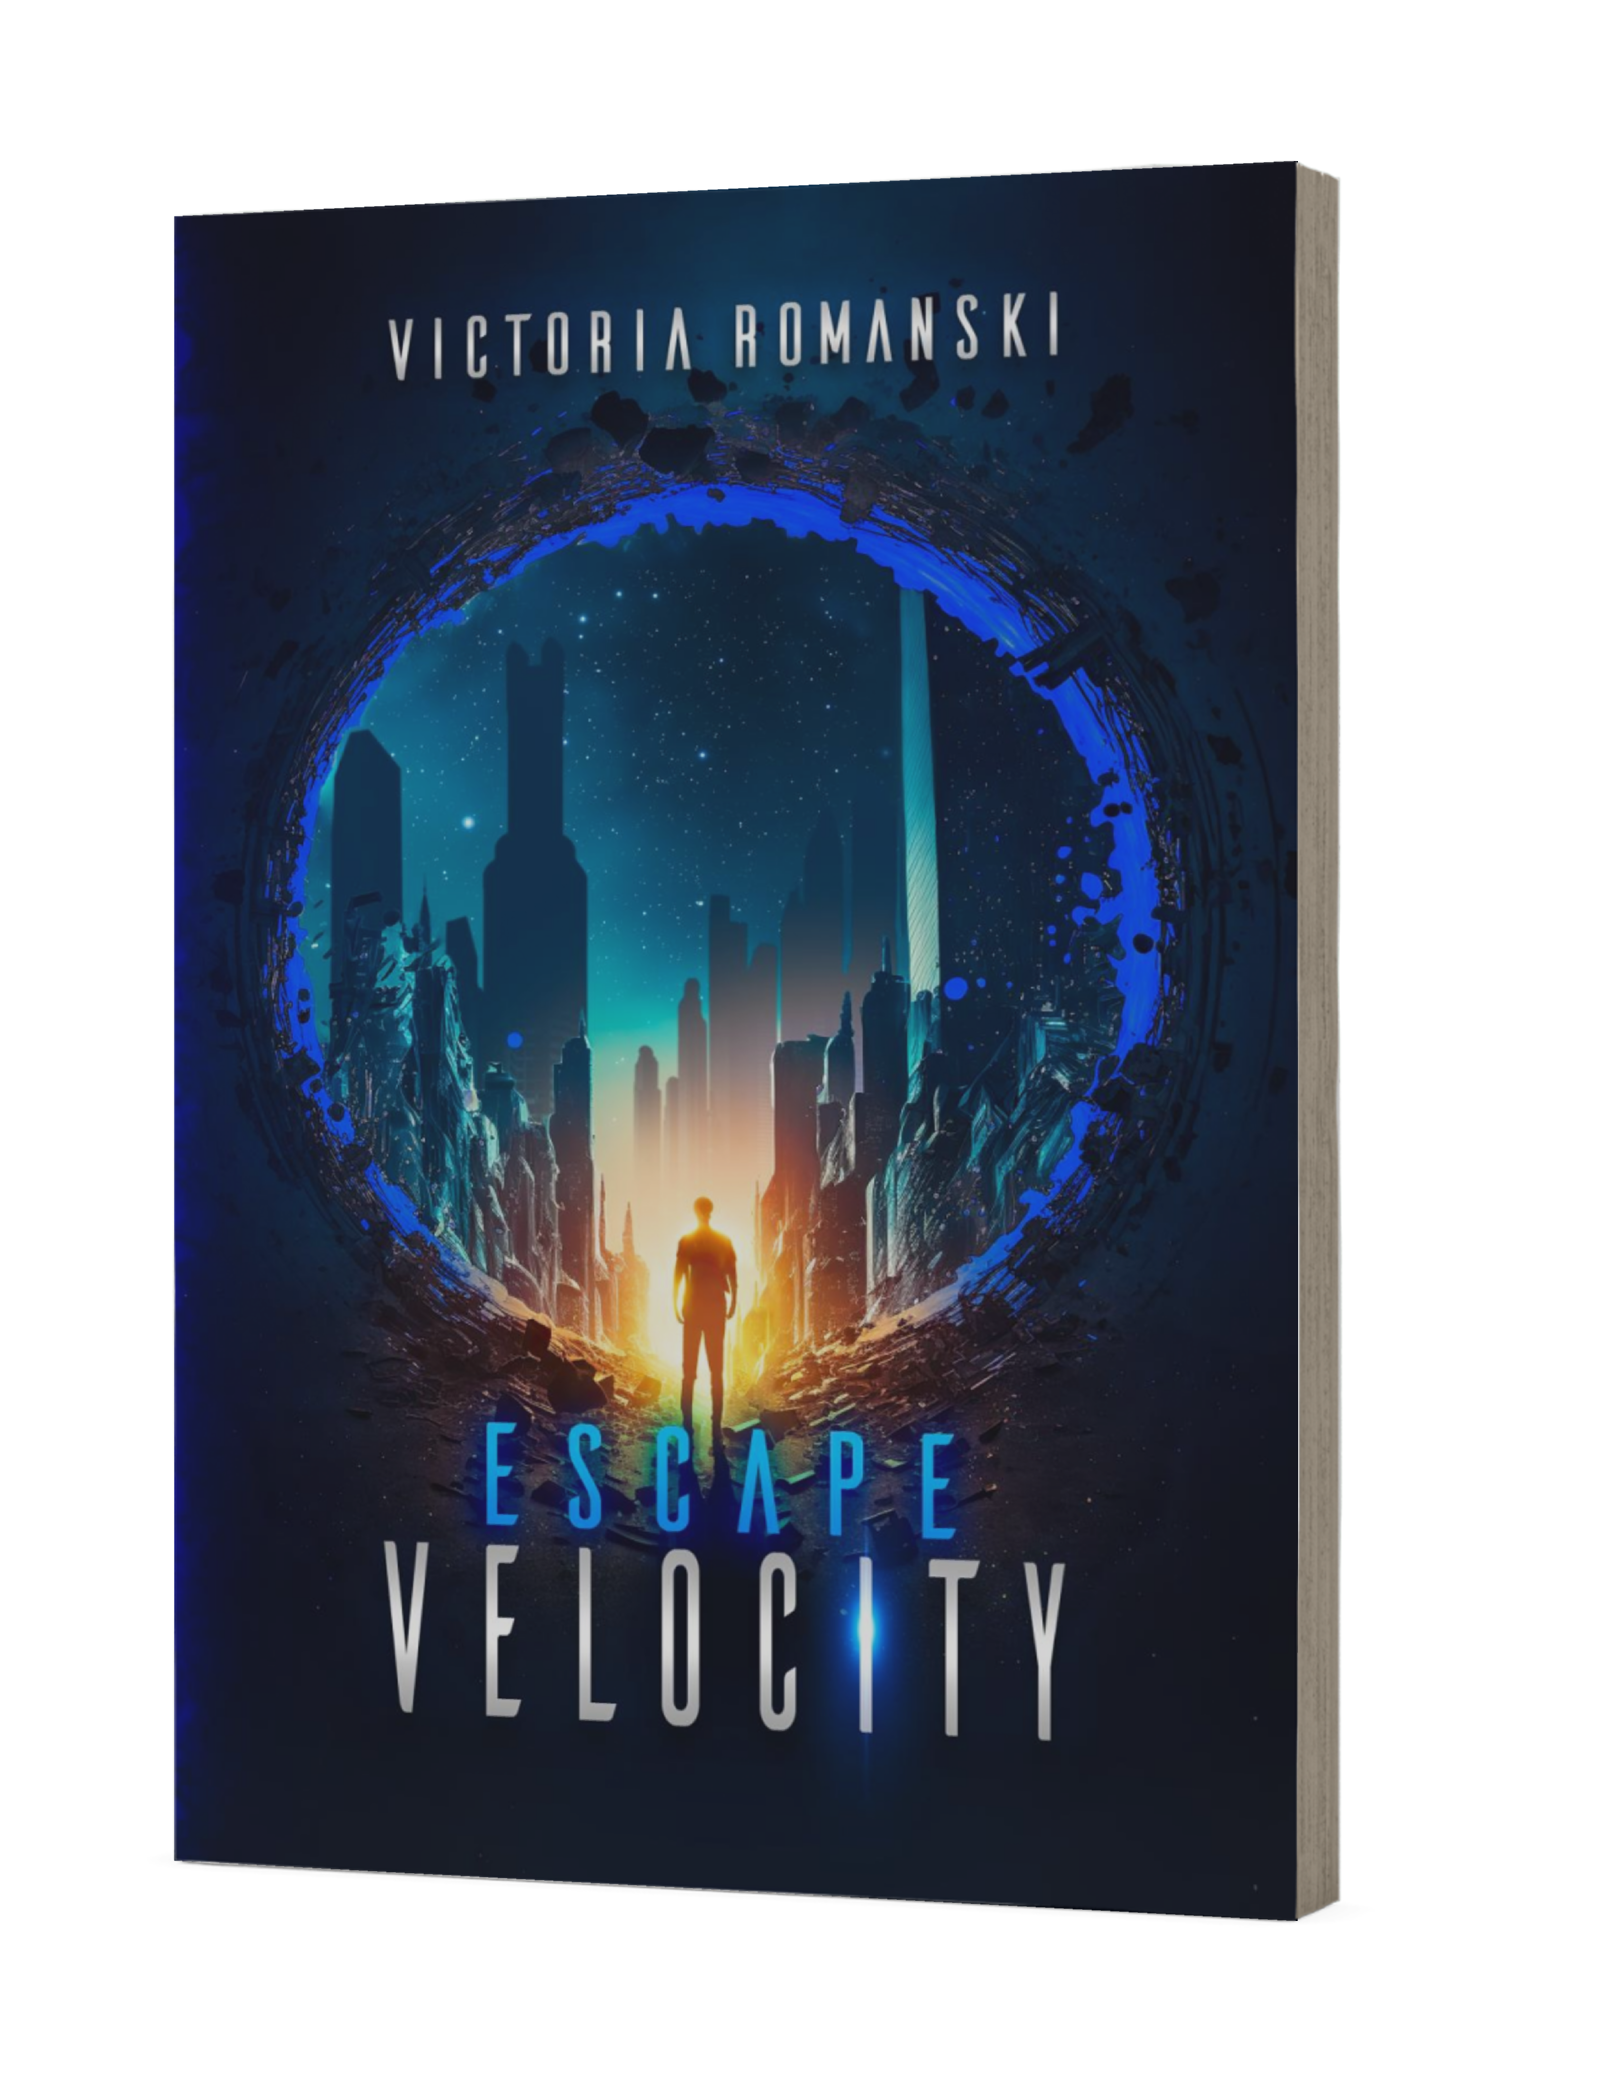 Victoria Romanski’s new book, "Escape Velocity"